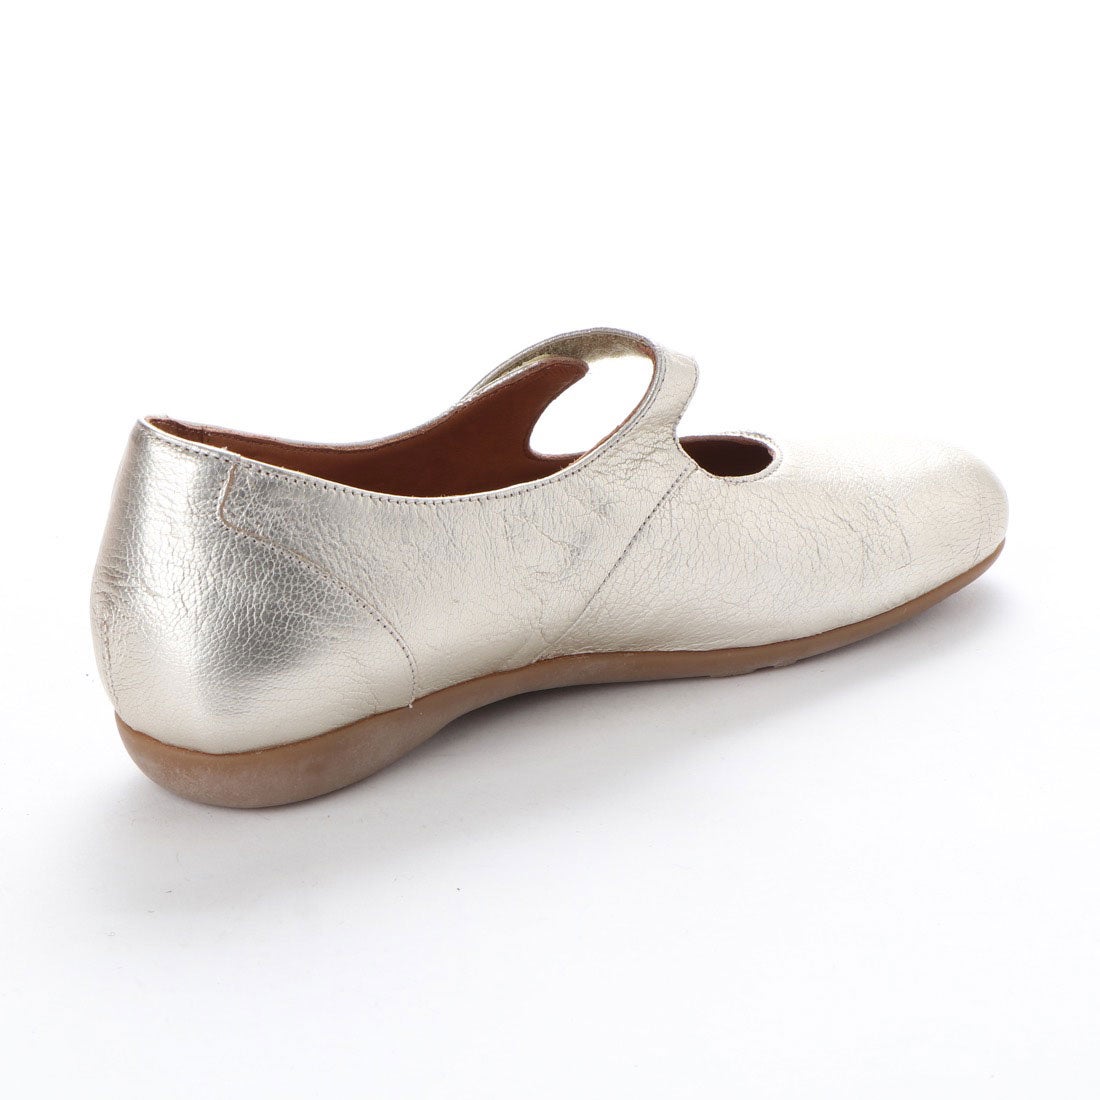 ヨーロッパコンフォートシューズ EU Comfort Shoes Benvado パンプス 